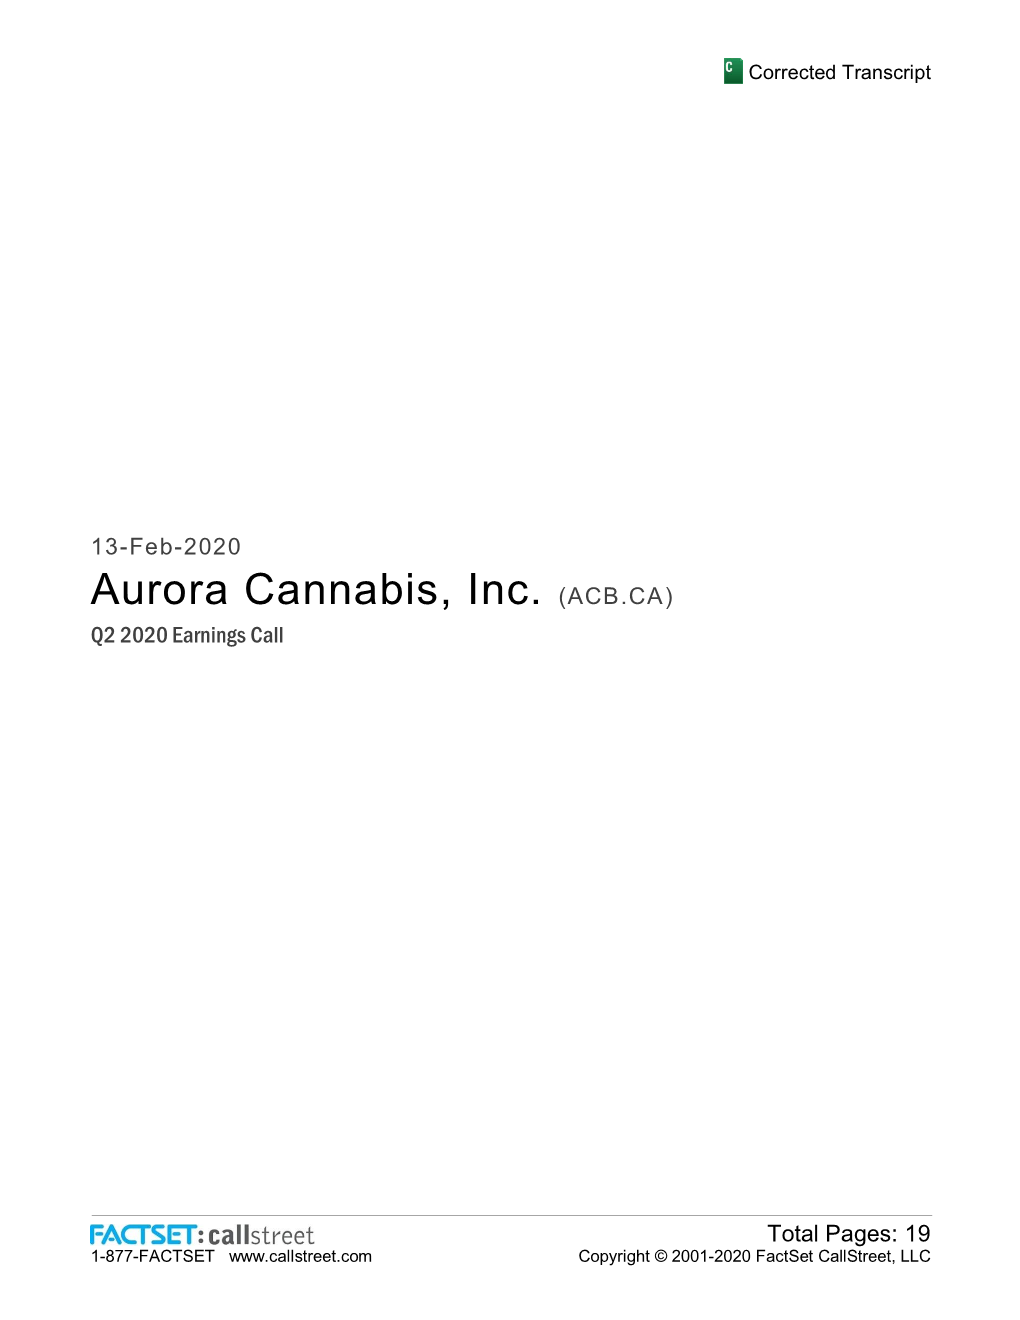 Aurora Cannabis, Inc. (ACB.CA) Q2 2020 Earnings Call